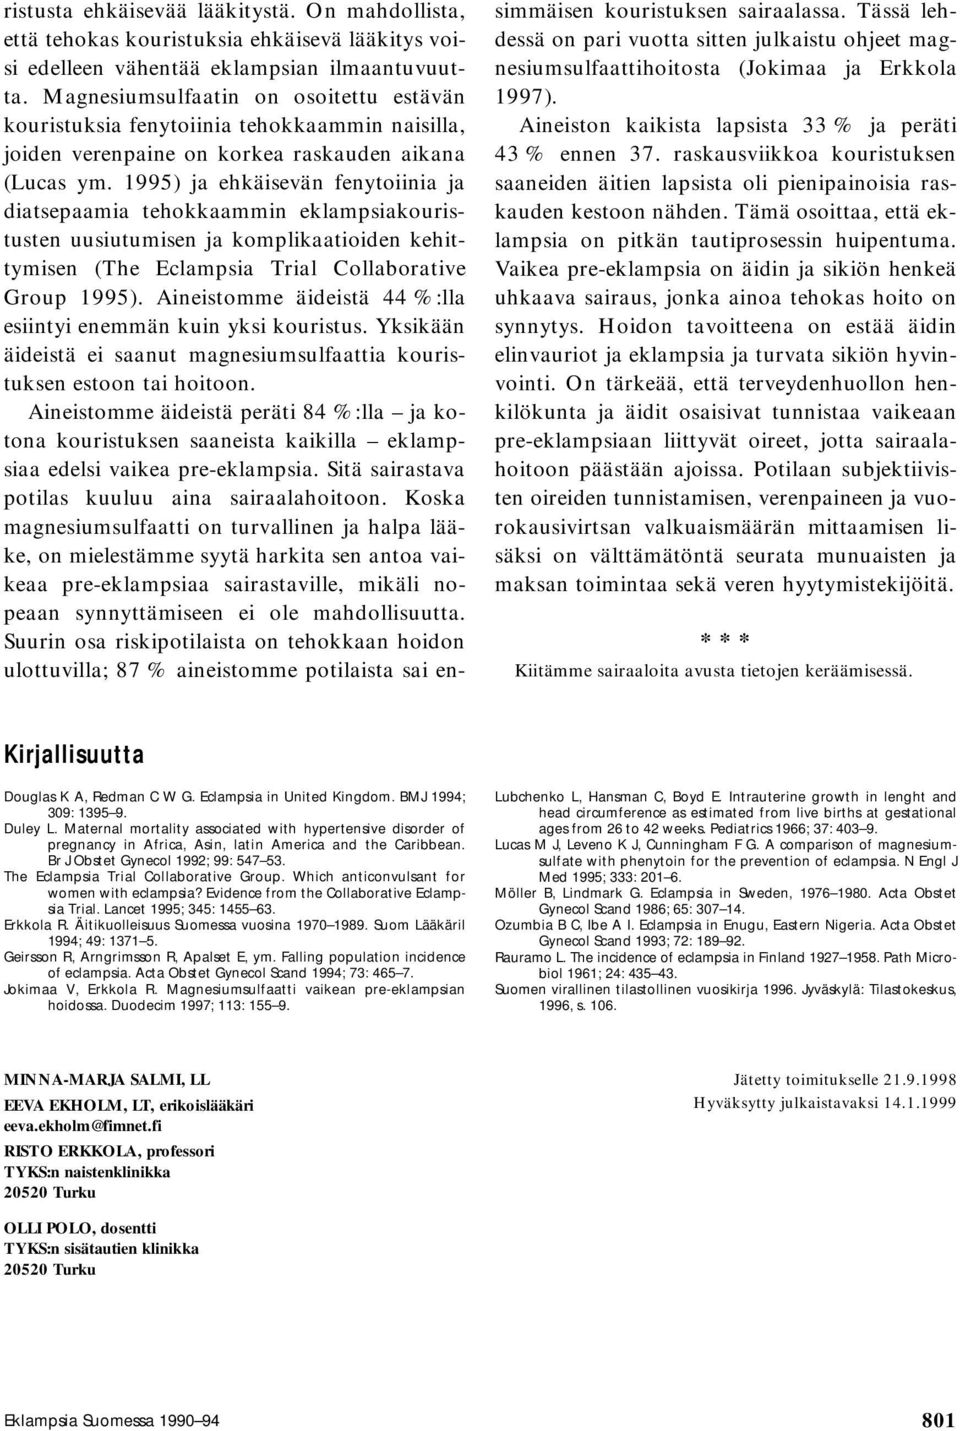 1995) ja ehkäisevän fenytoiinia ja diatsepaamia tehokkaammin eklampsiakouristusten uusiutumisen ja komplikaatioiden kehittymisen (The Eclampsia Trial Collaborative Group 1995).